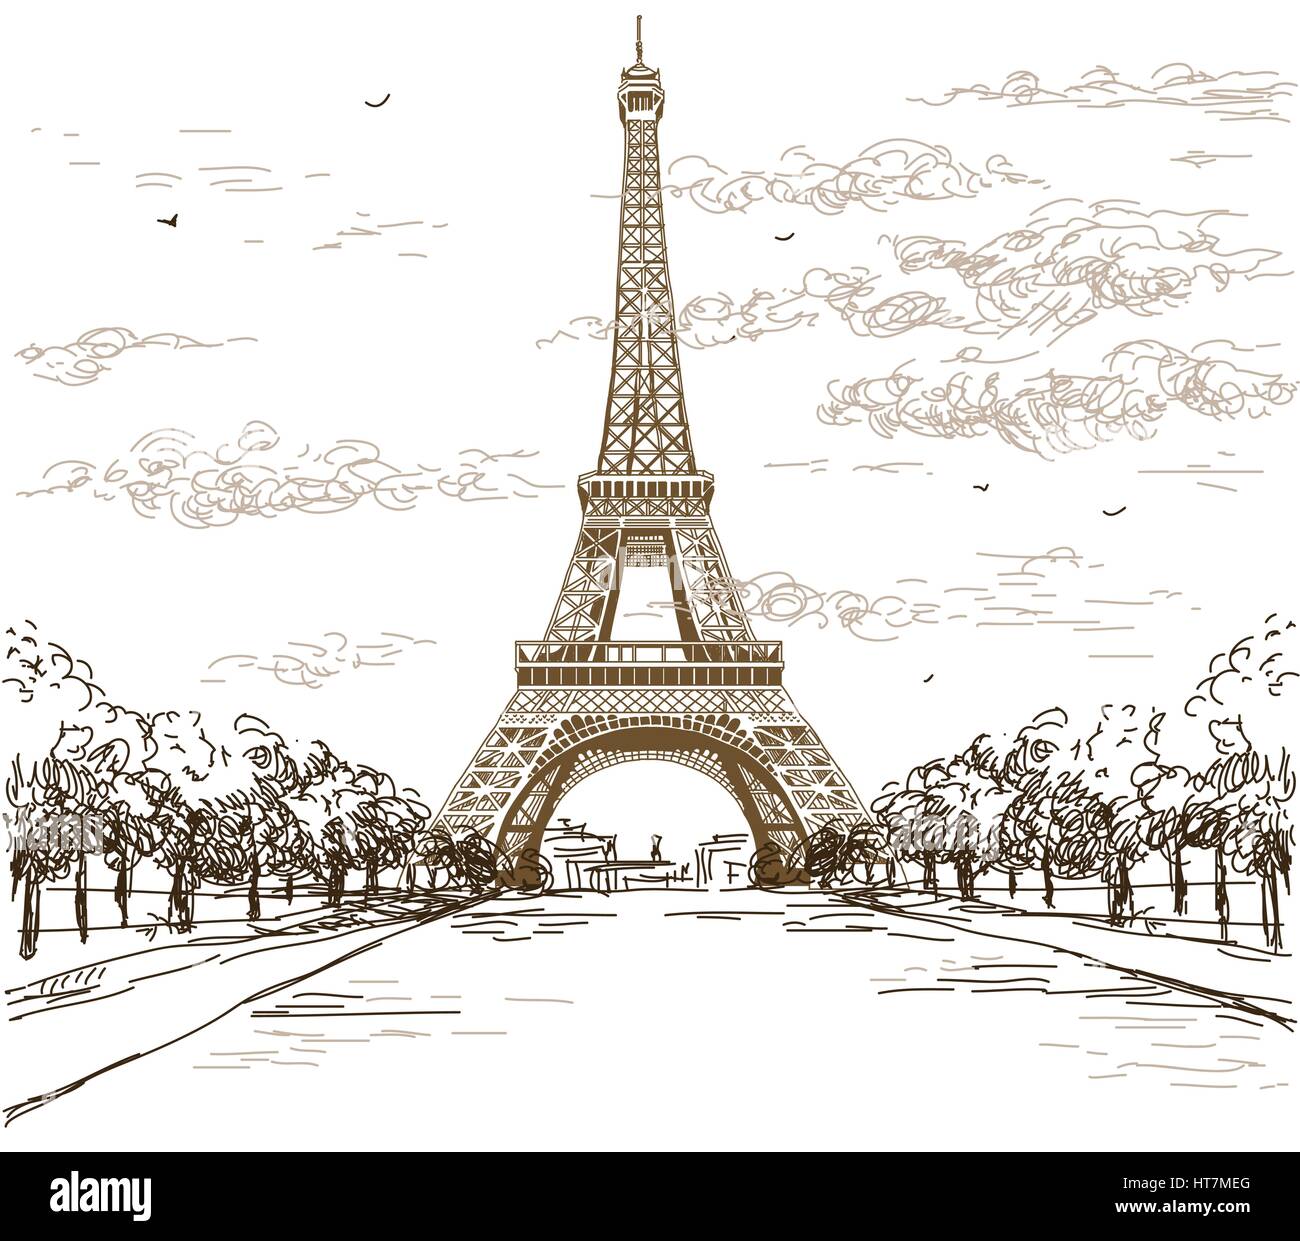 Paesaggio Con Torre Eiffel Nei Colori Bianco E Nero Su Sfondo Grigio Vettore Di Disegno A Mano Illustrazione Immagine E Vettoriale Alamy